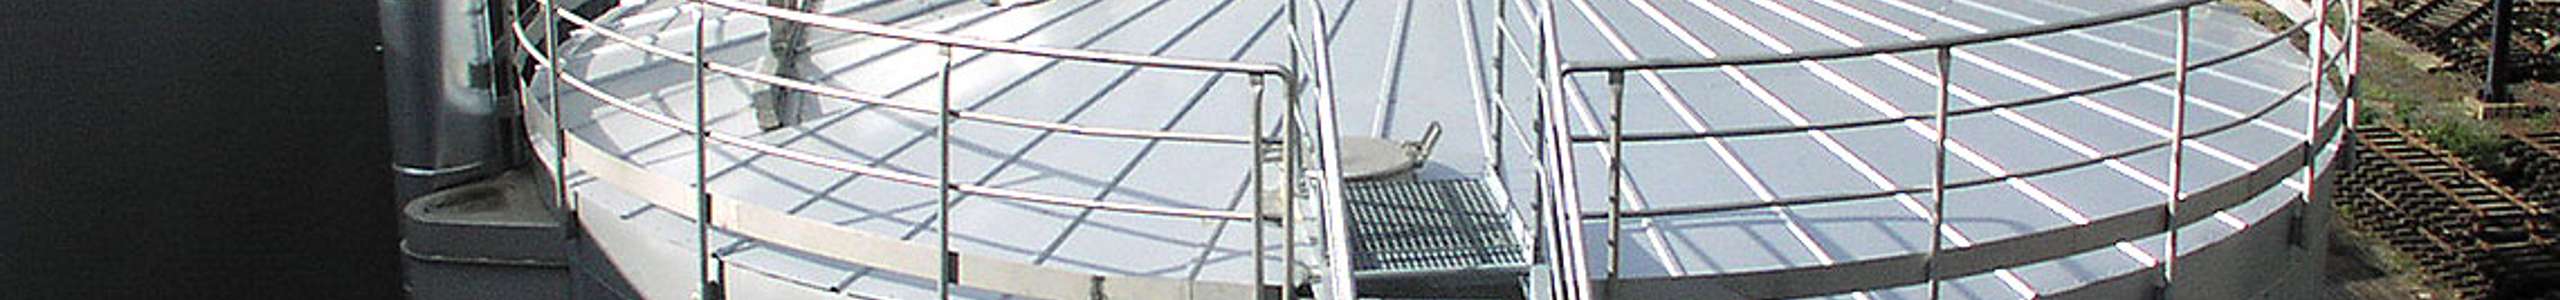 Ein großes Silo mit einer Treppe aus Metall. Etwas Dampf ströhmt aus einem Rohr an der Spitze des Silos